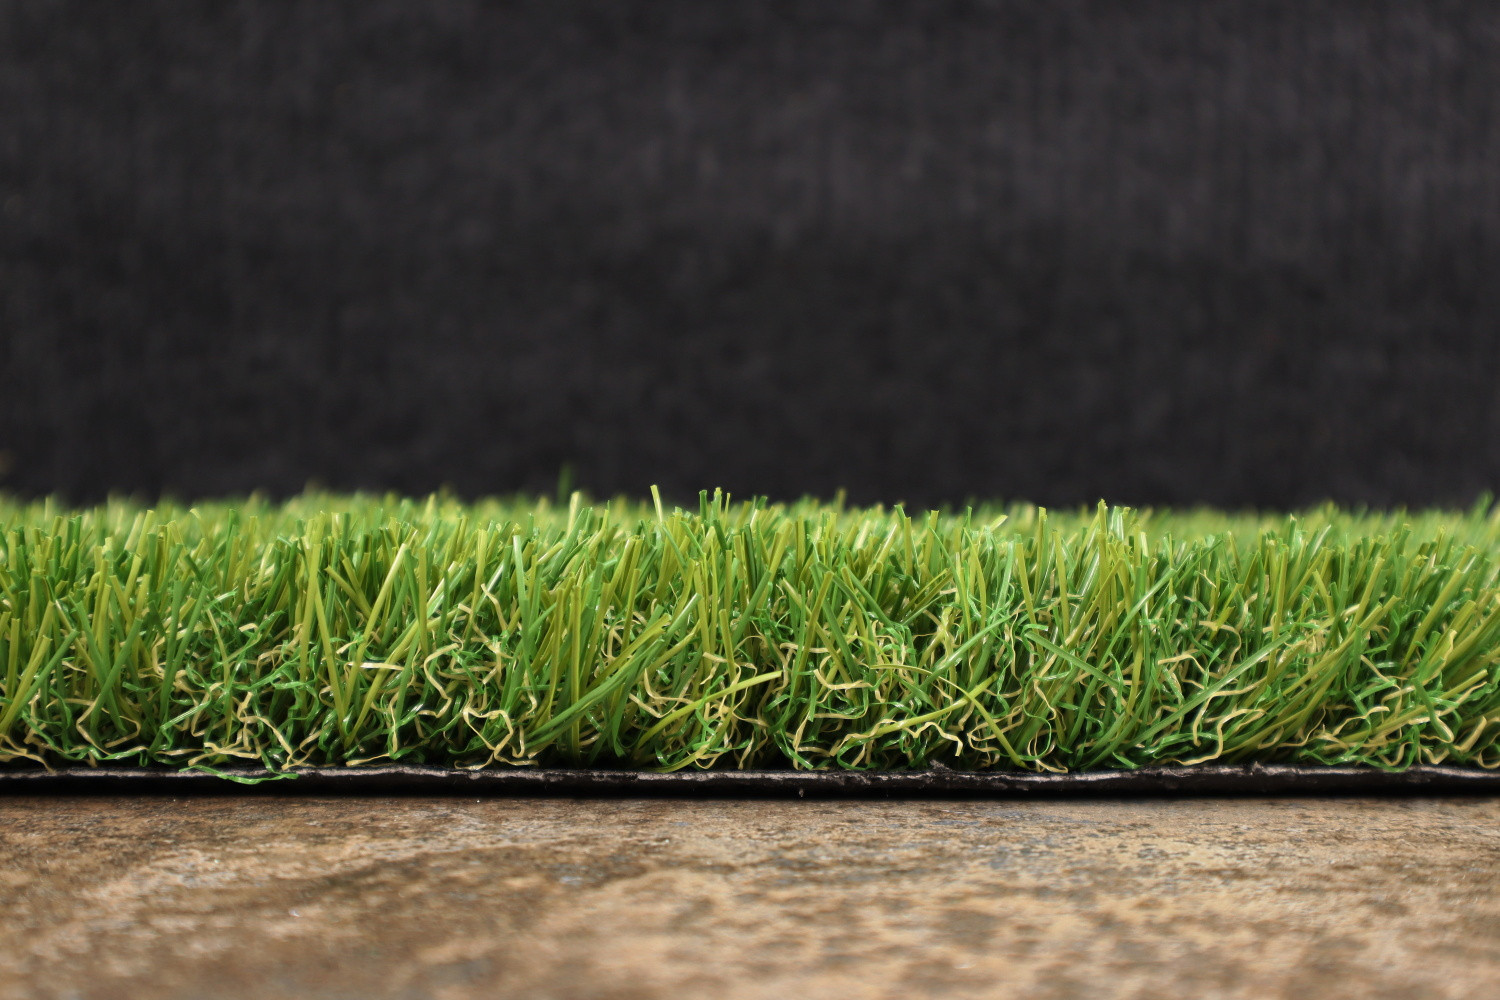 AKCE: 270x400 cm Umělá tráva Rosalia metrážní - Rozměr na míru cm Artificial grass specialists